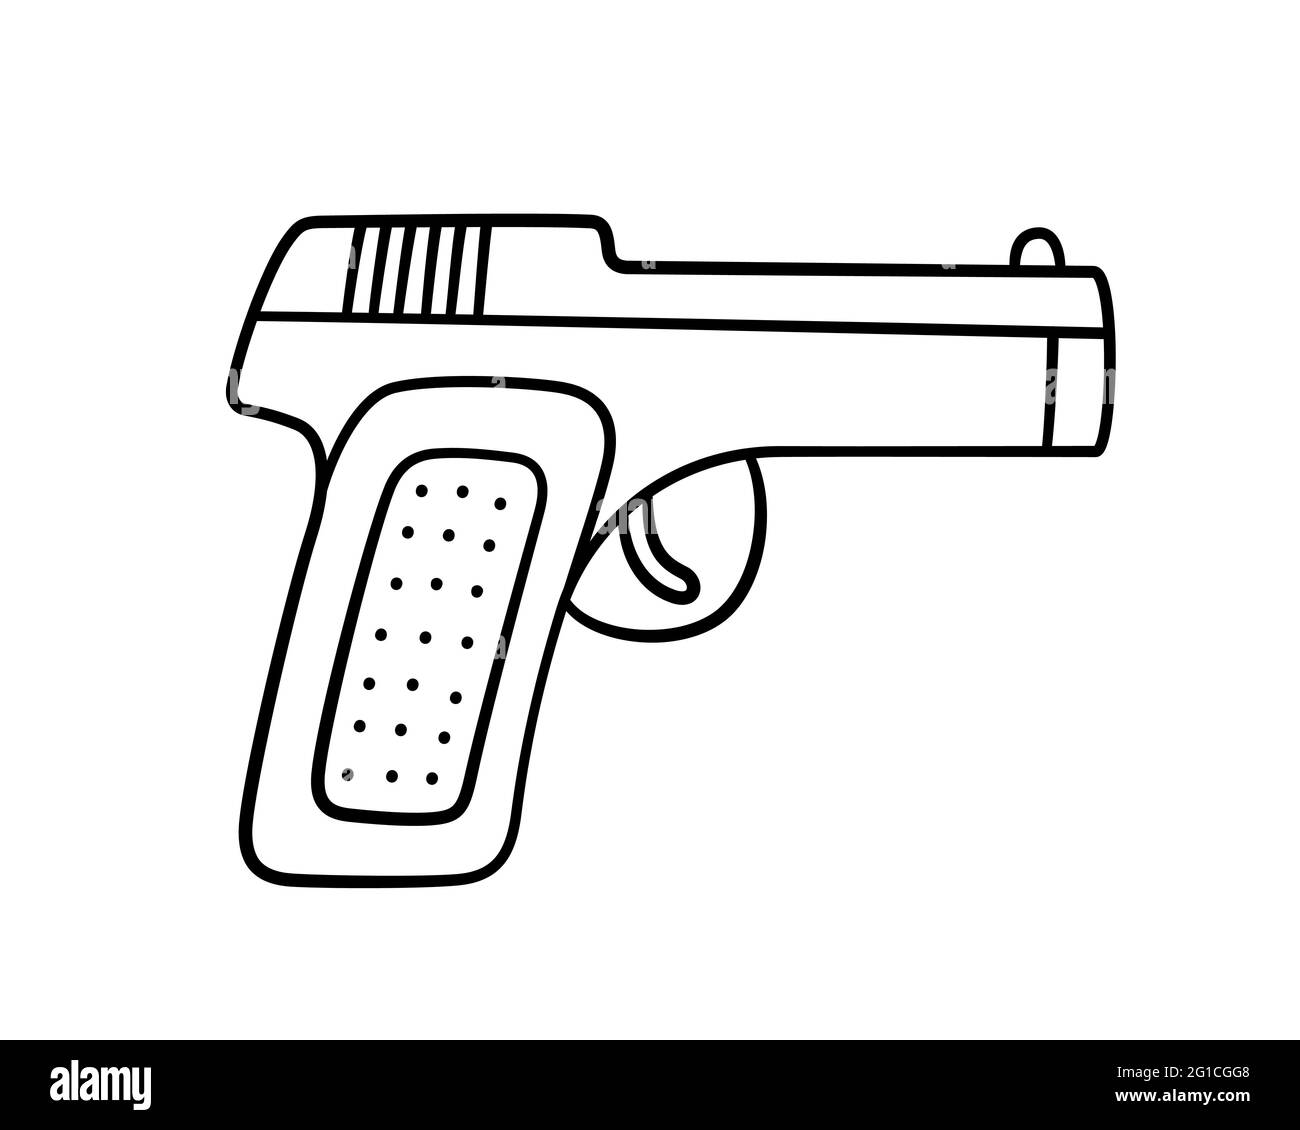 Handgezeichnete Pistole. Kinder Zeichnung der Kampfpistole. Vektorgrafik im Doodle-Stil auf weißem Hintergrund Stock Vektor